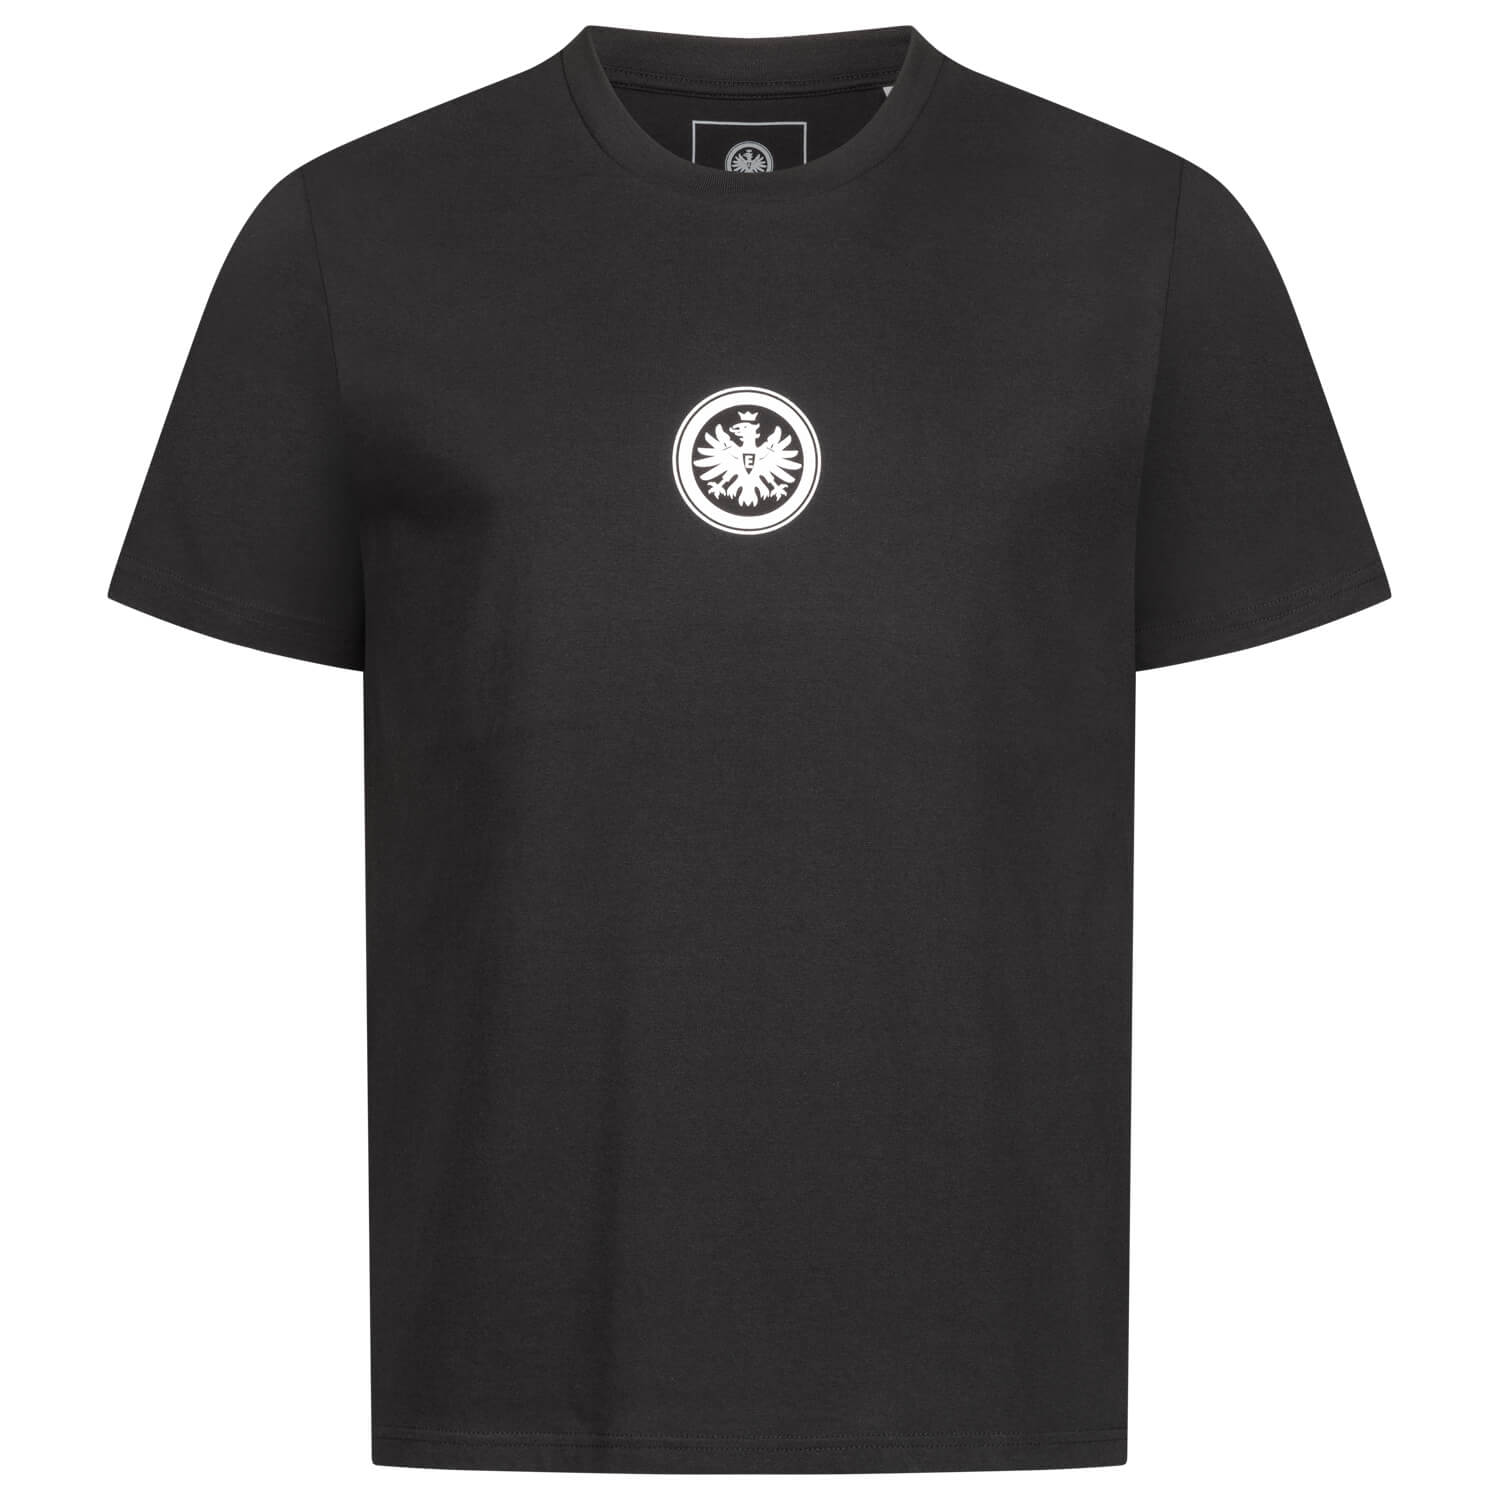 Bild 1: T-Shirt Ein Verein Schwarz